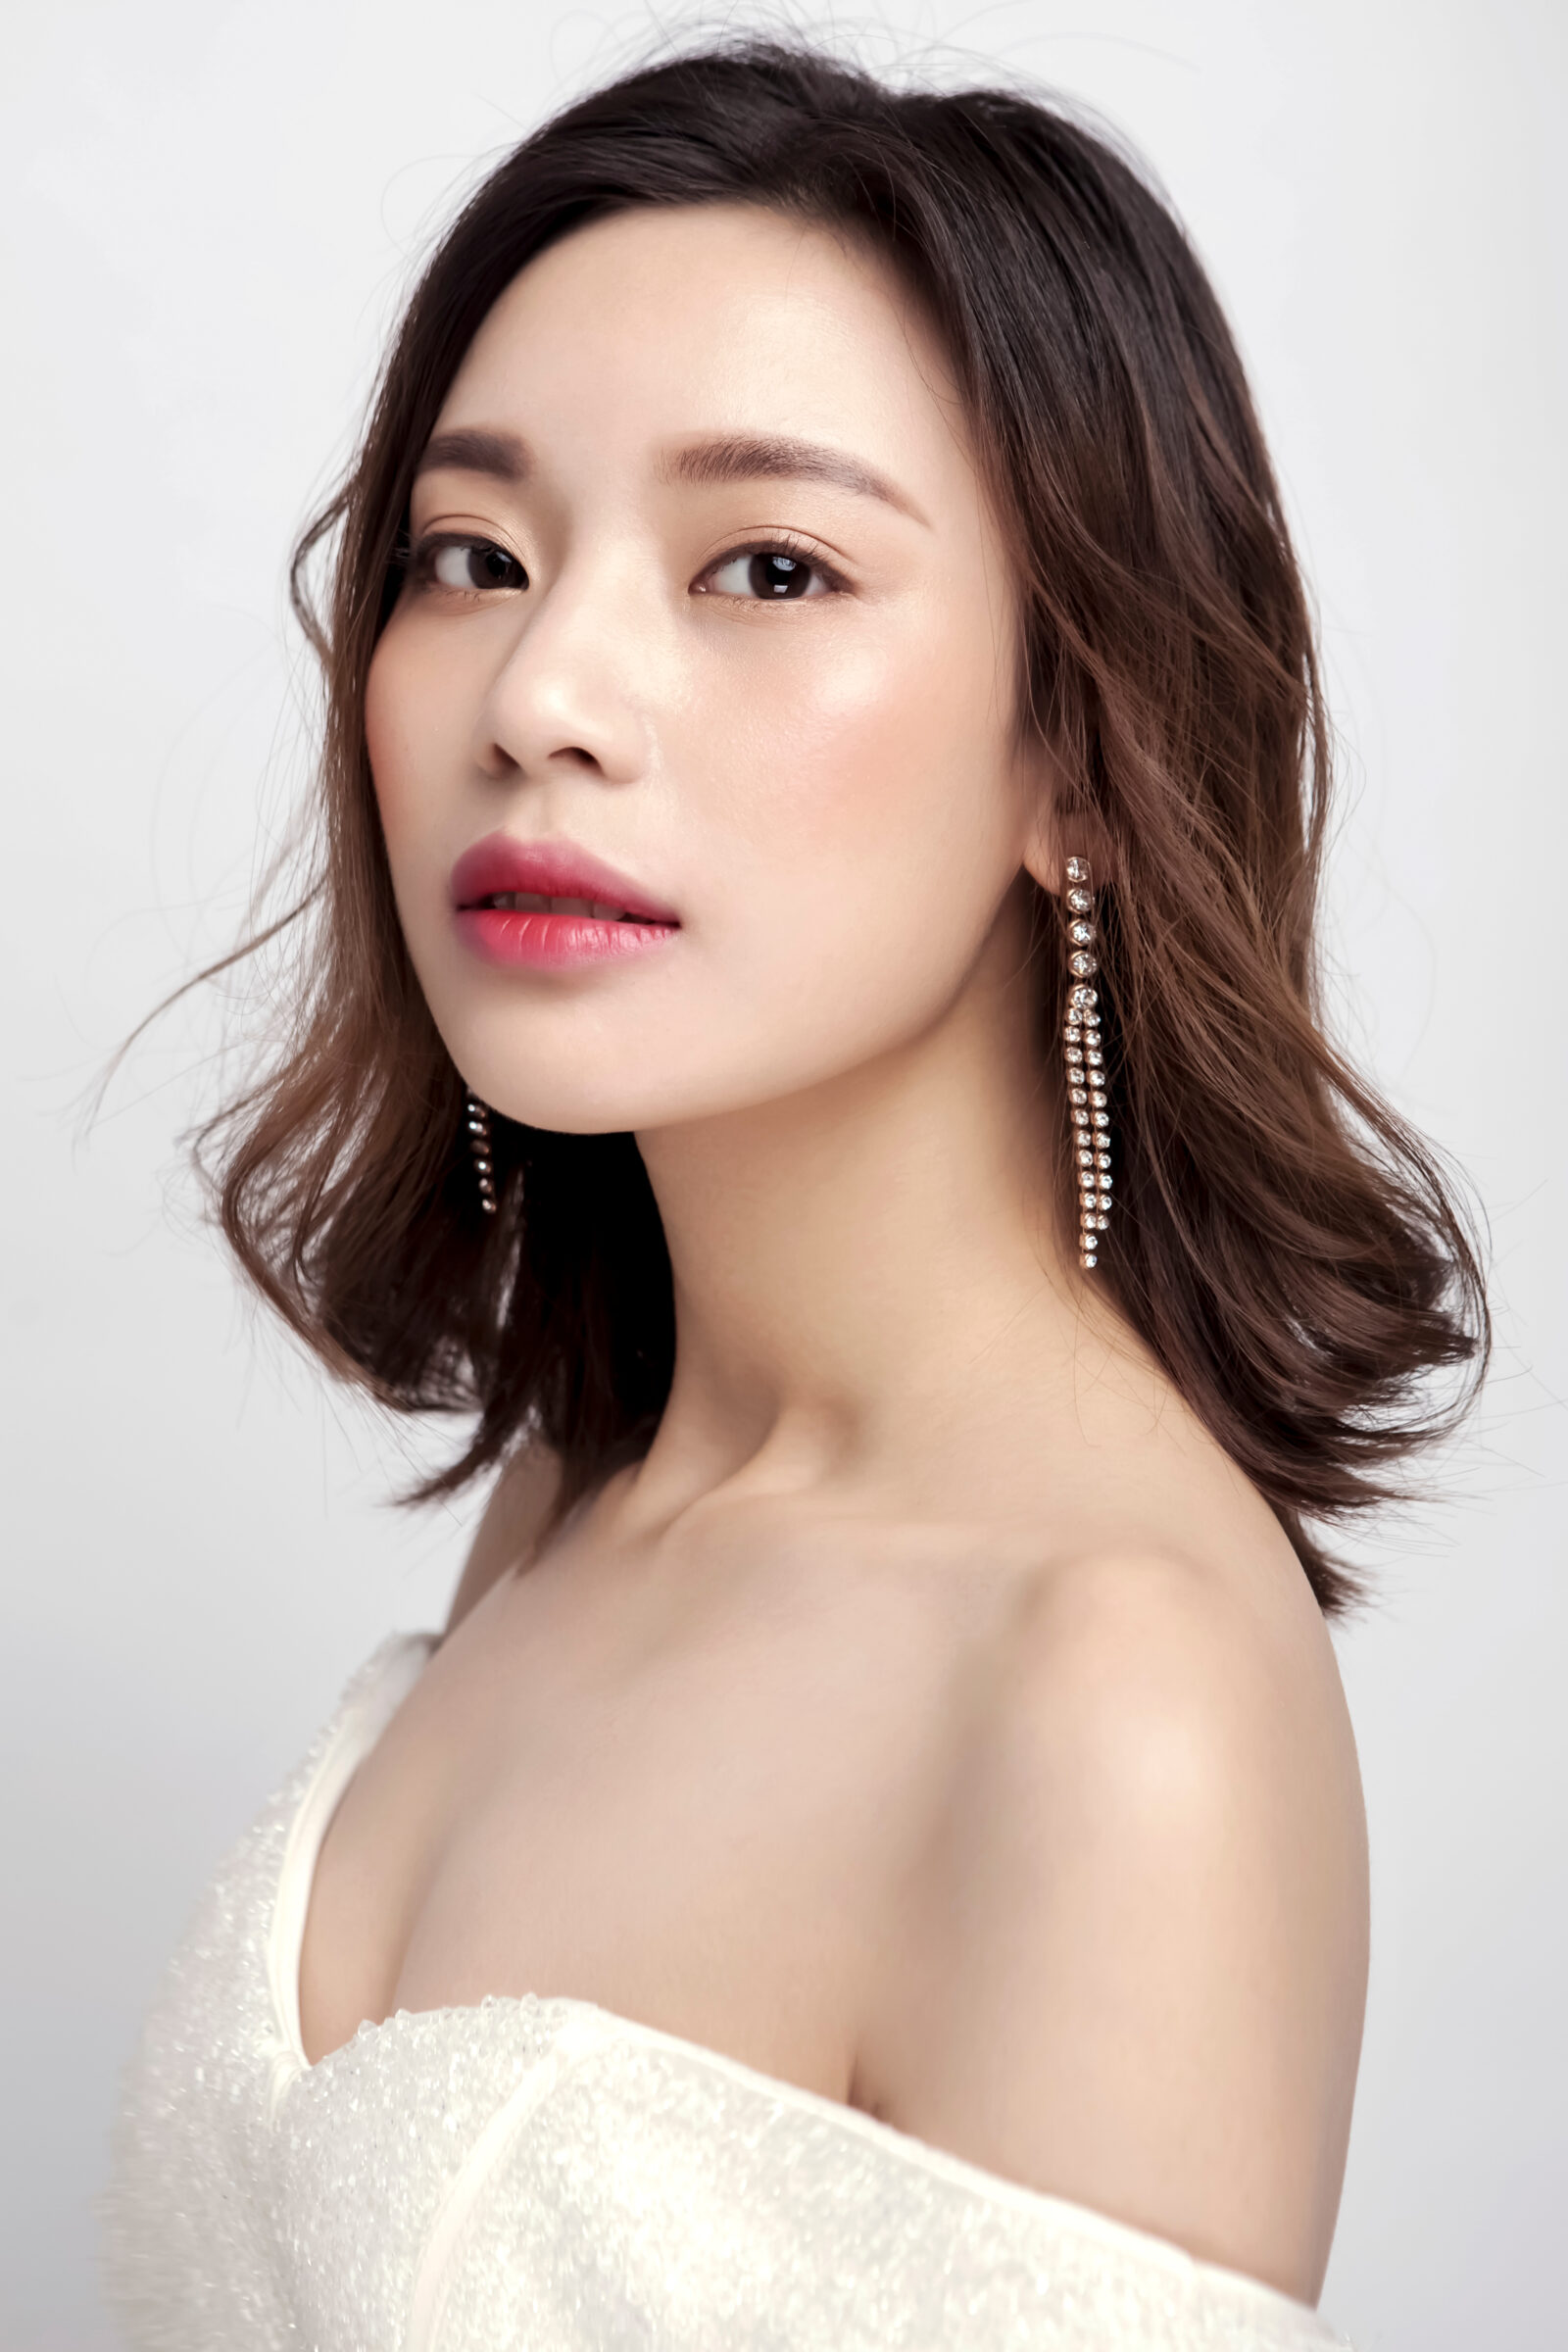 Korean anti aging skincare